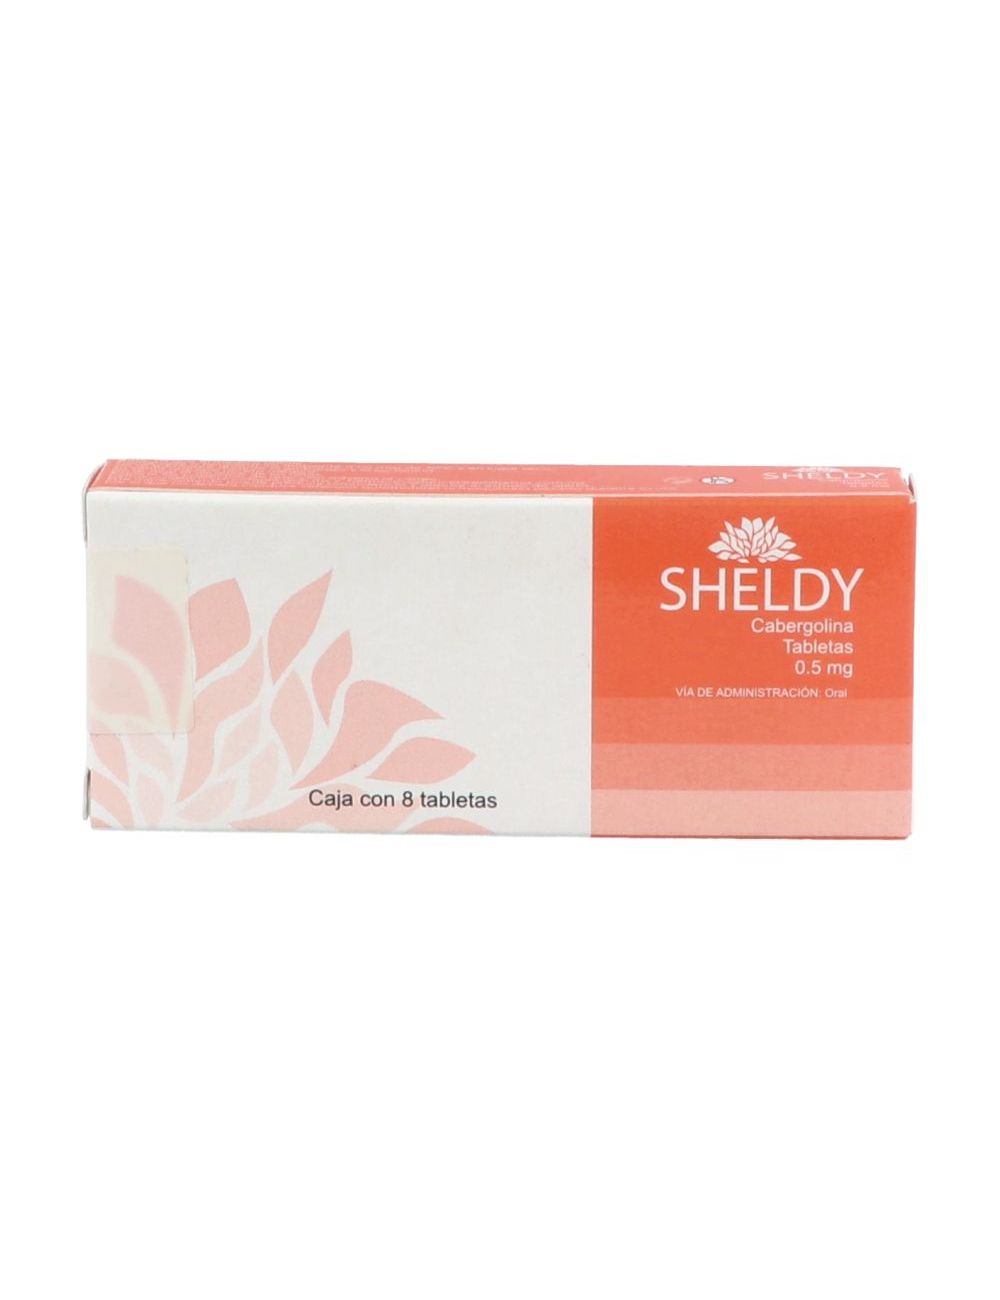 Sheldy 0.5 mg Caja Con 8 Tabletas